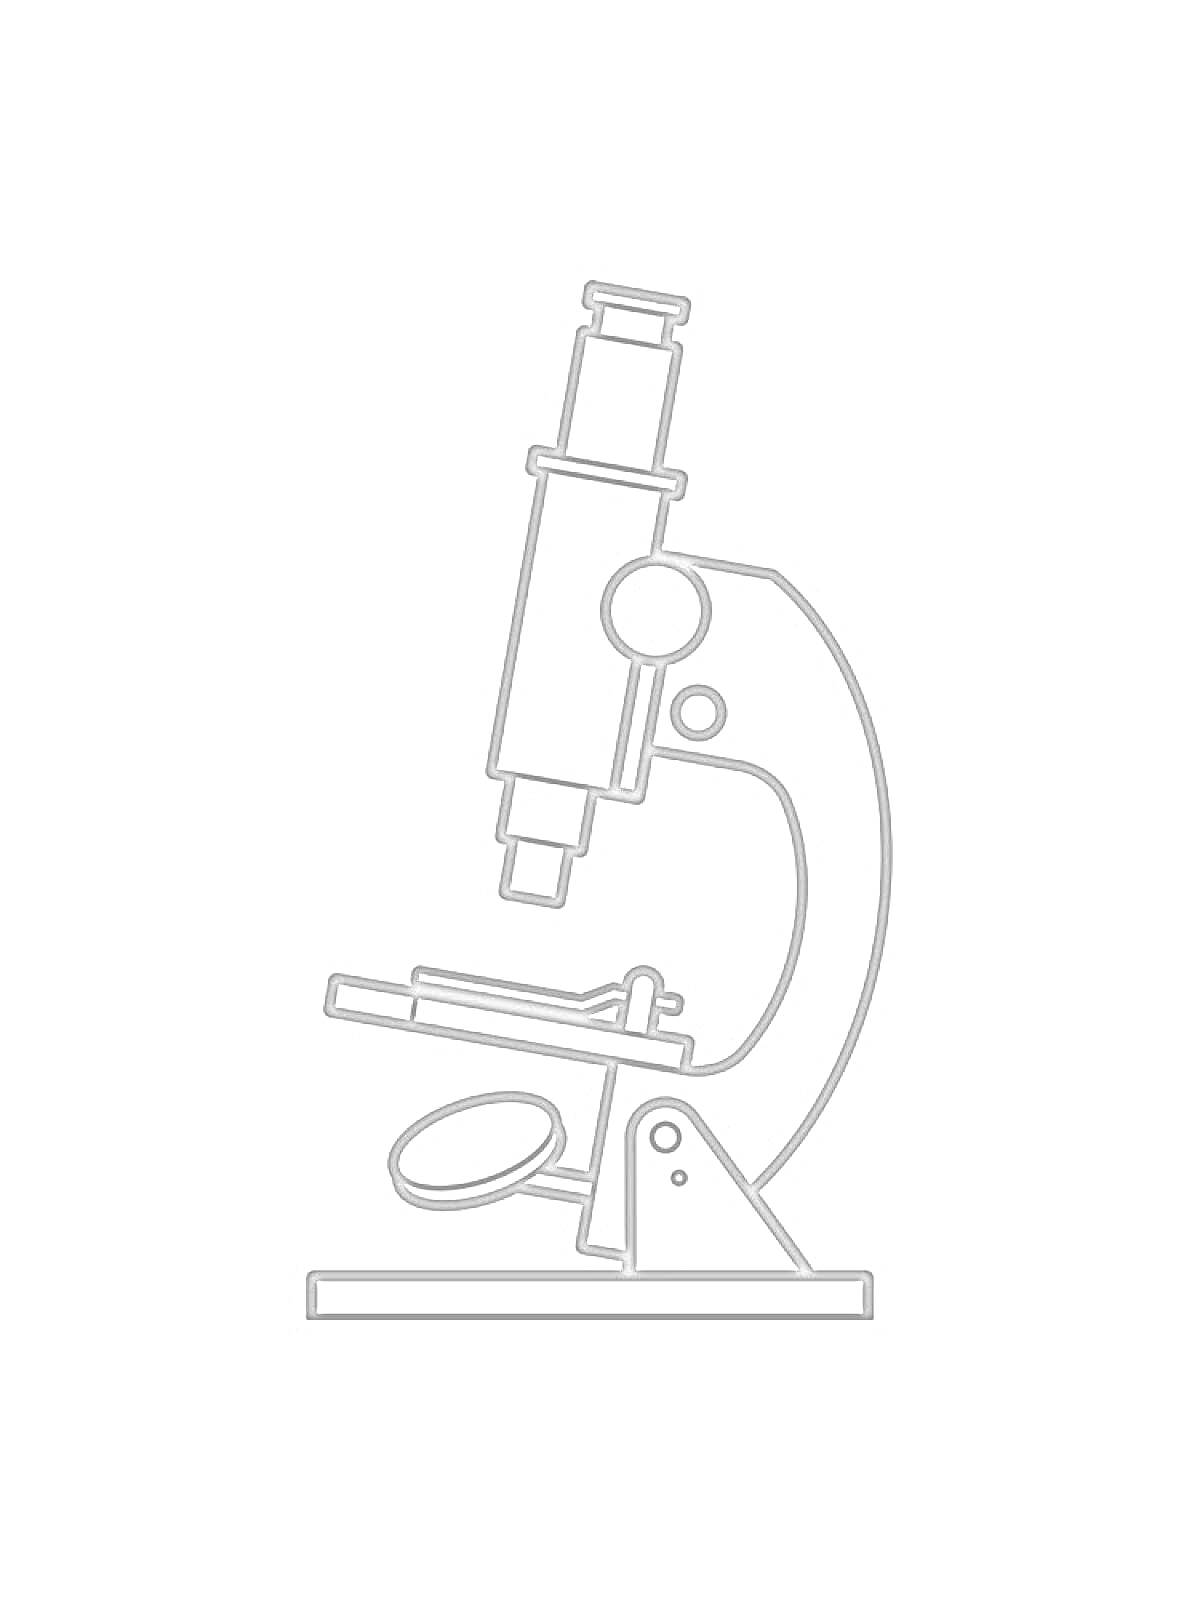 Раскраска Рисунок микроскопа с объективом, окуляром, предметным столиком и держателем